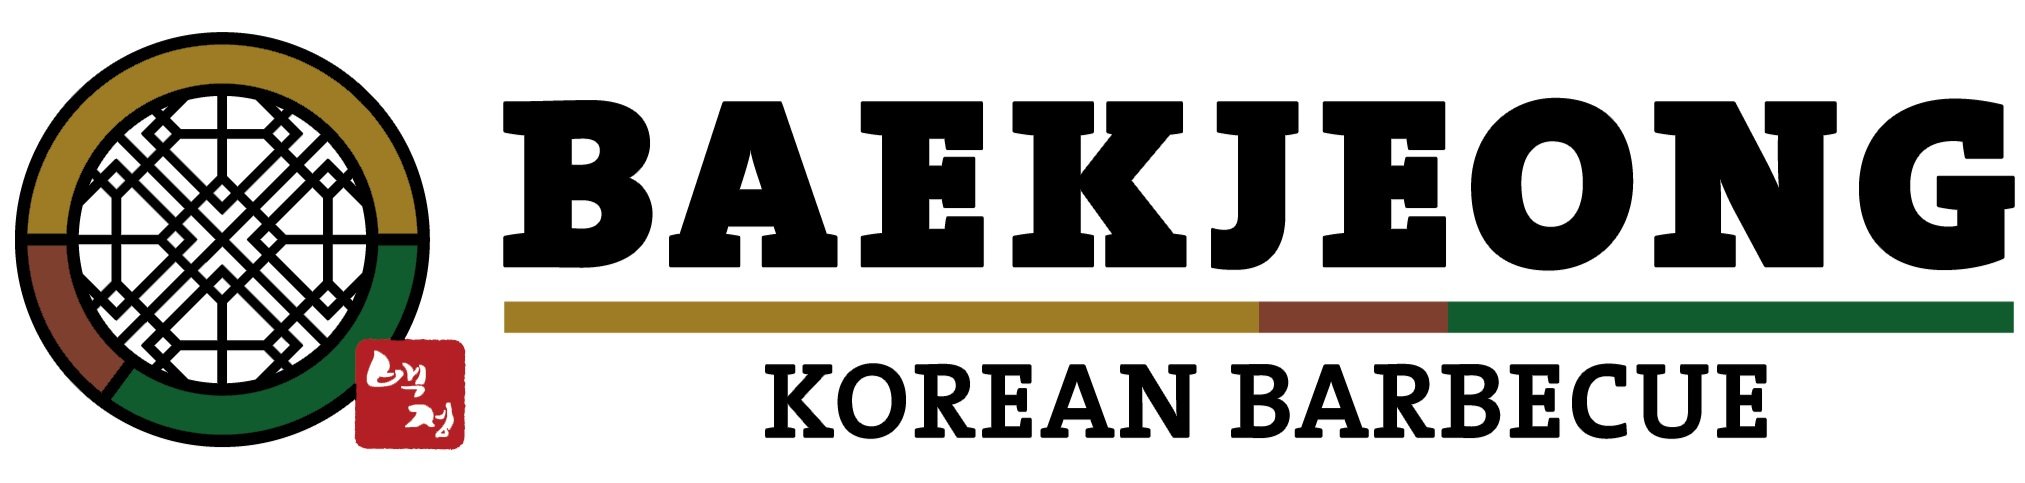 Baekjeong